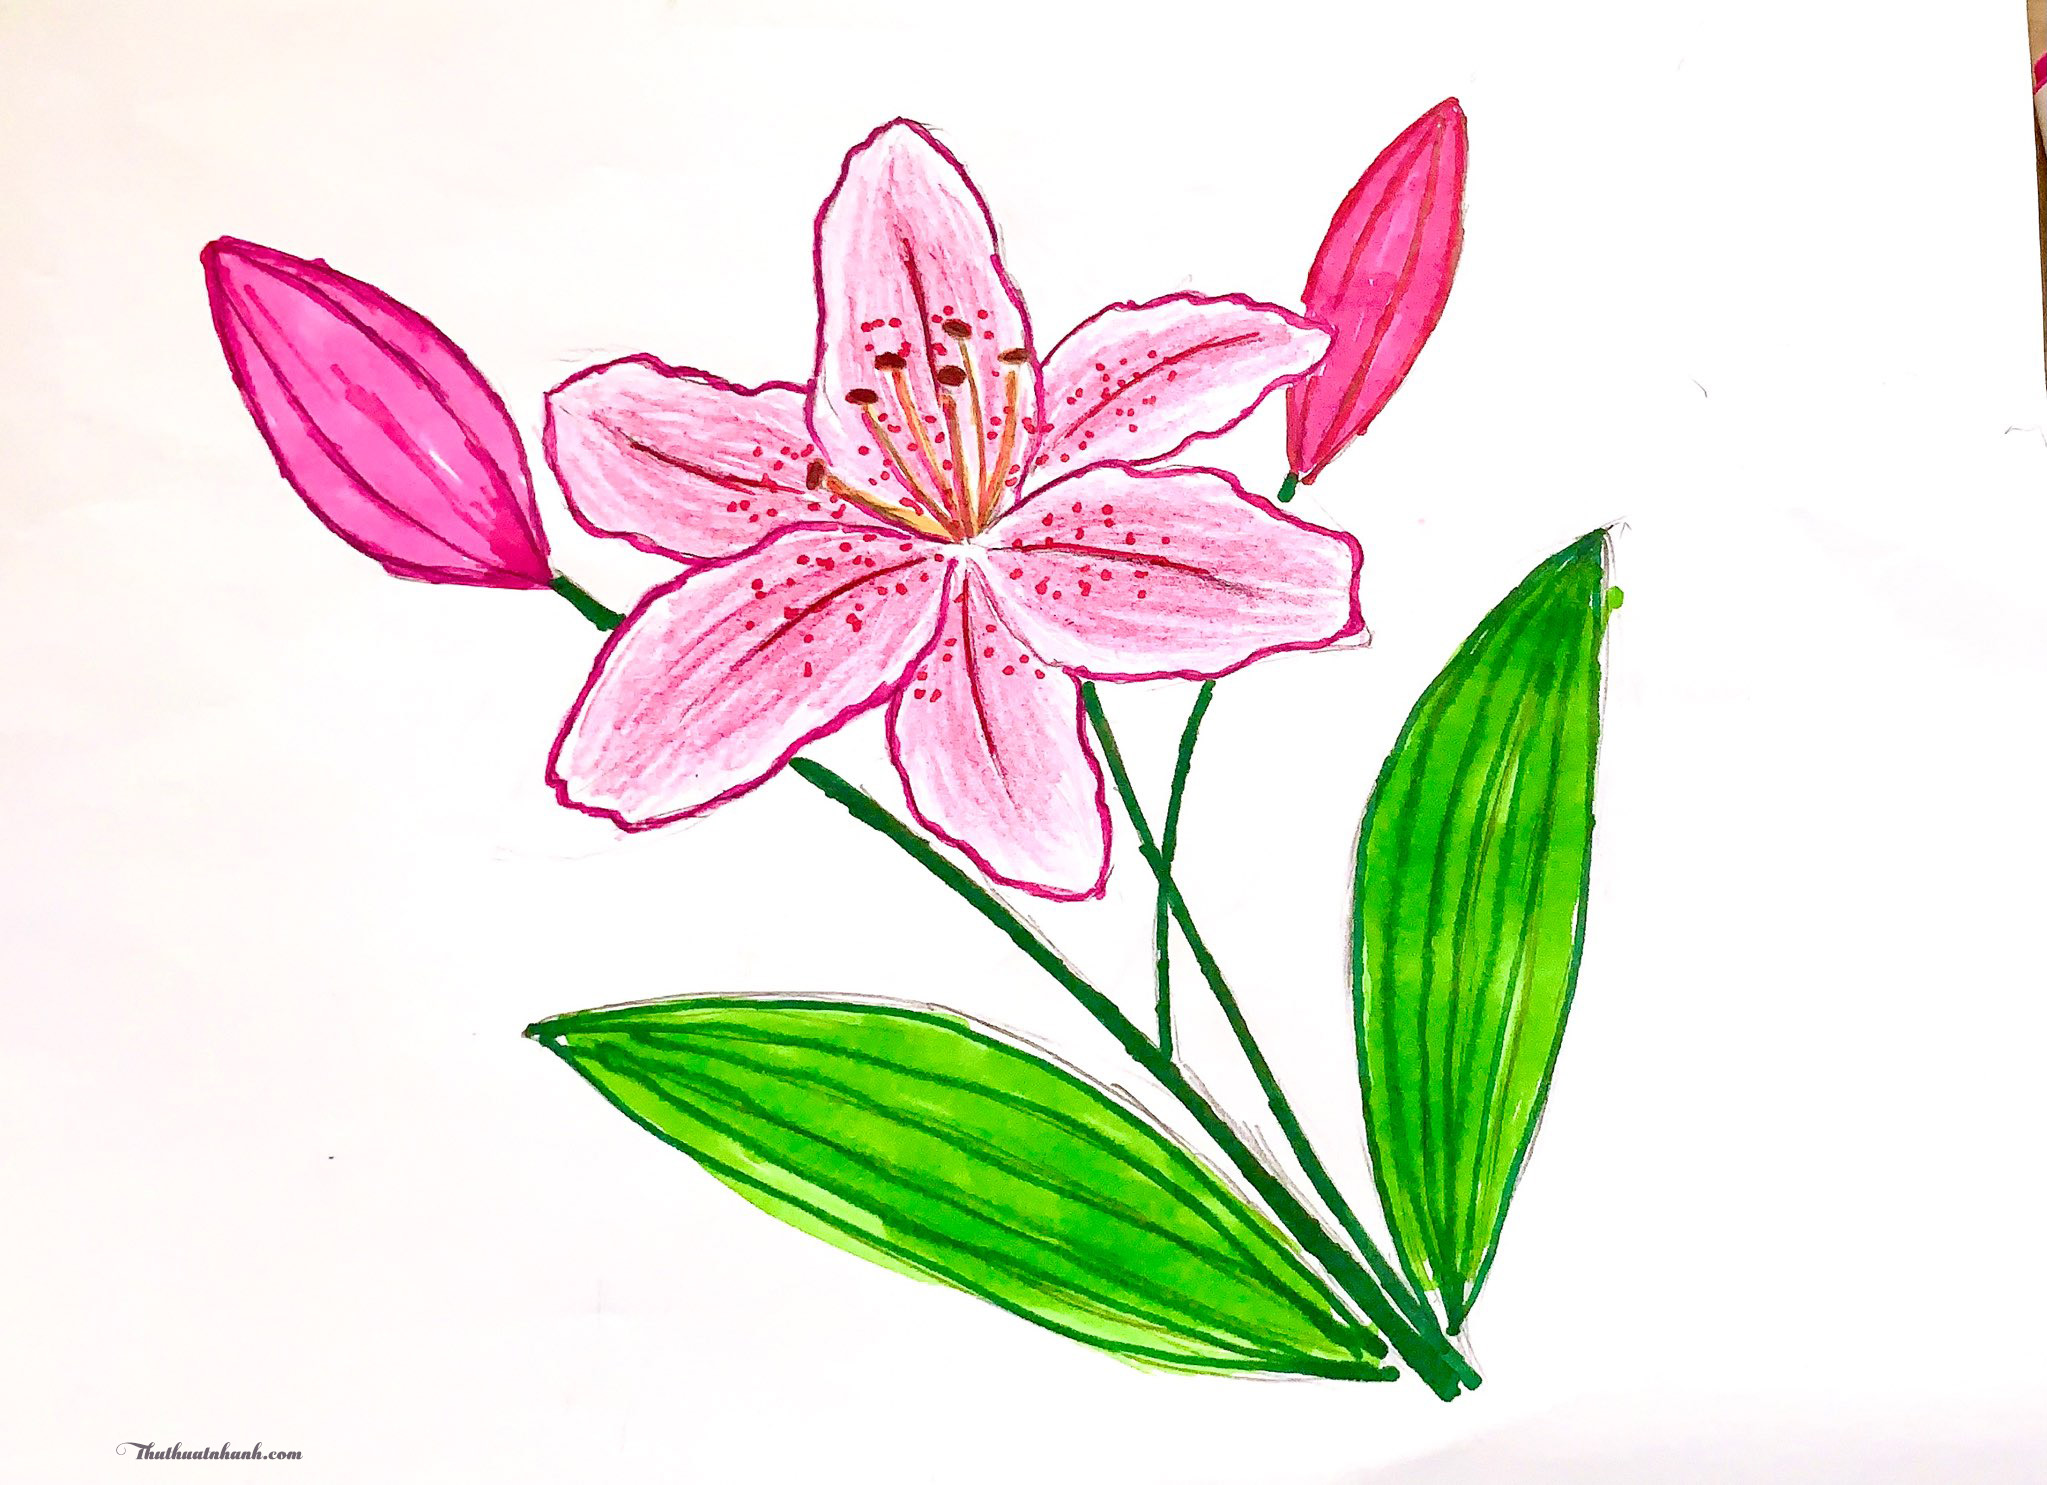 Vẽ cây mai ngày Tết  Vẽ hoa mai ngày Tết đơn giản  Cách vẽ cây hoa mai   Ngày tết Cây Hoa